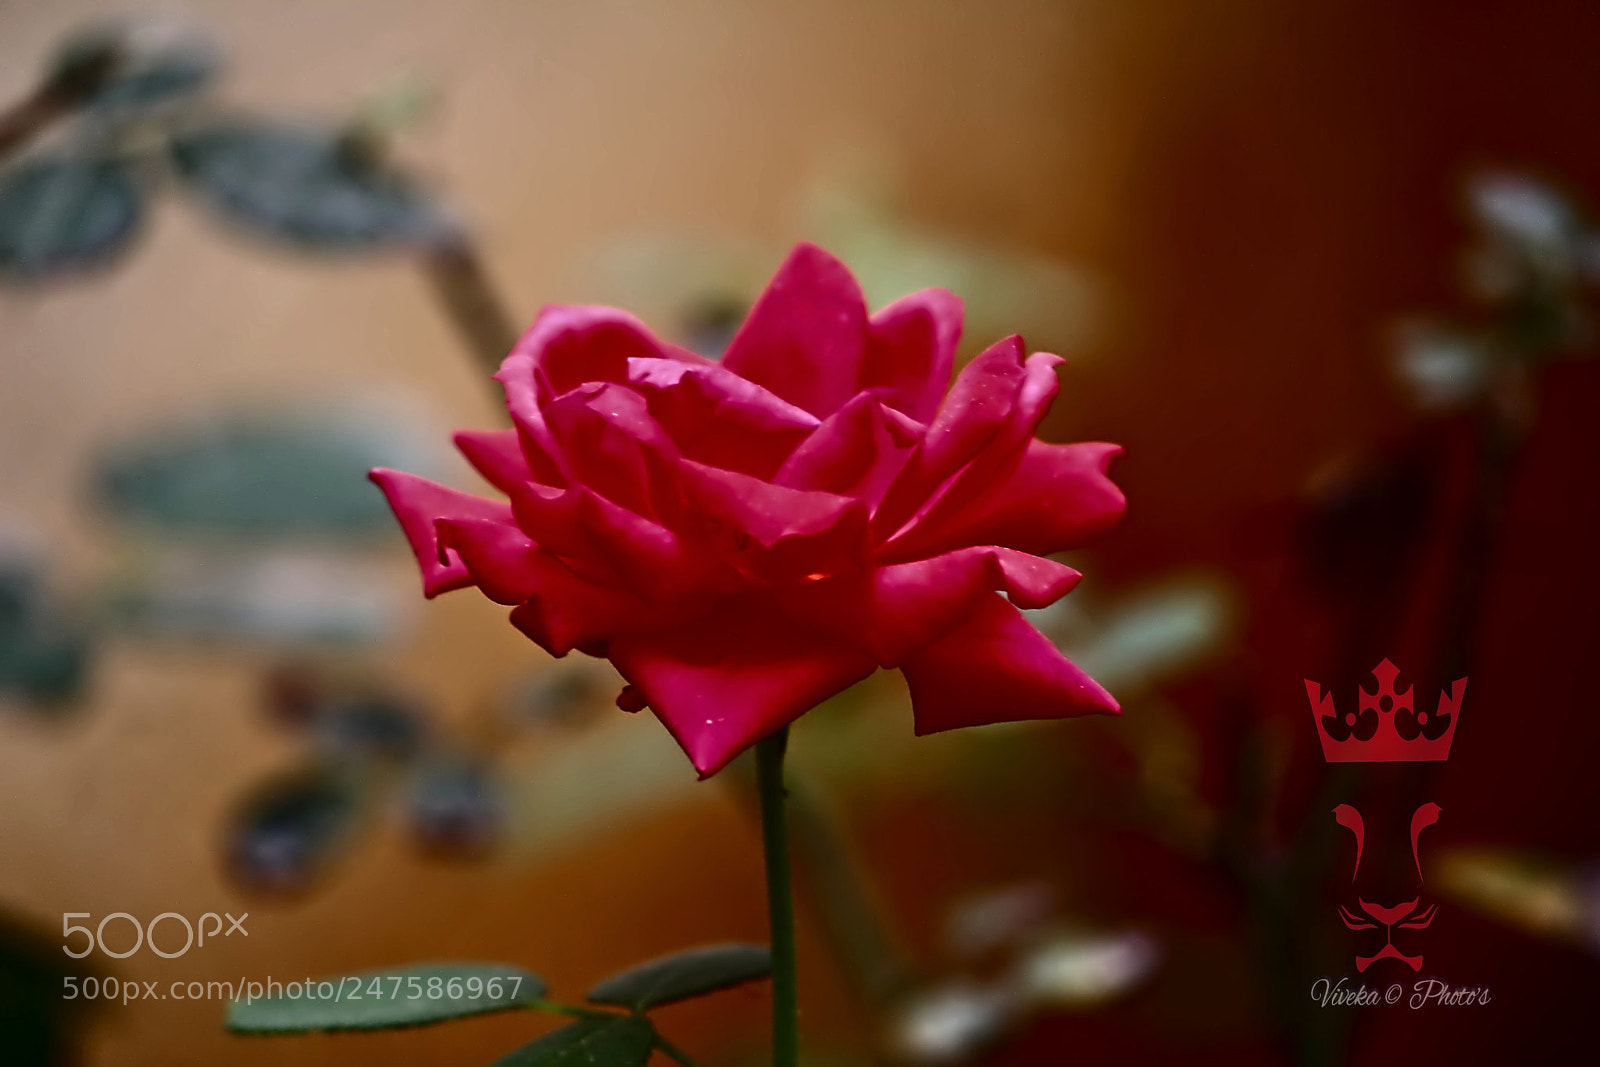 Canon EOS 1300D (EOS Rebel T6 / EOS Kiss X80) sample photo. My garden roses photography